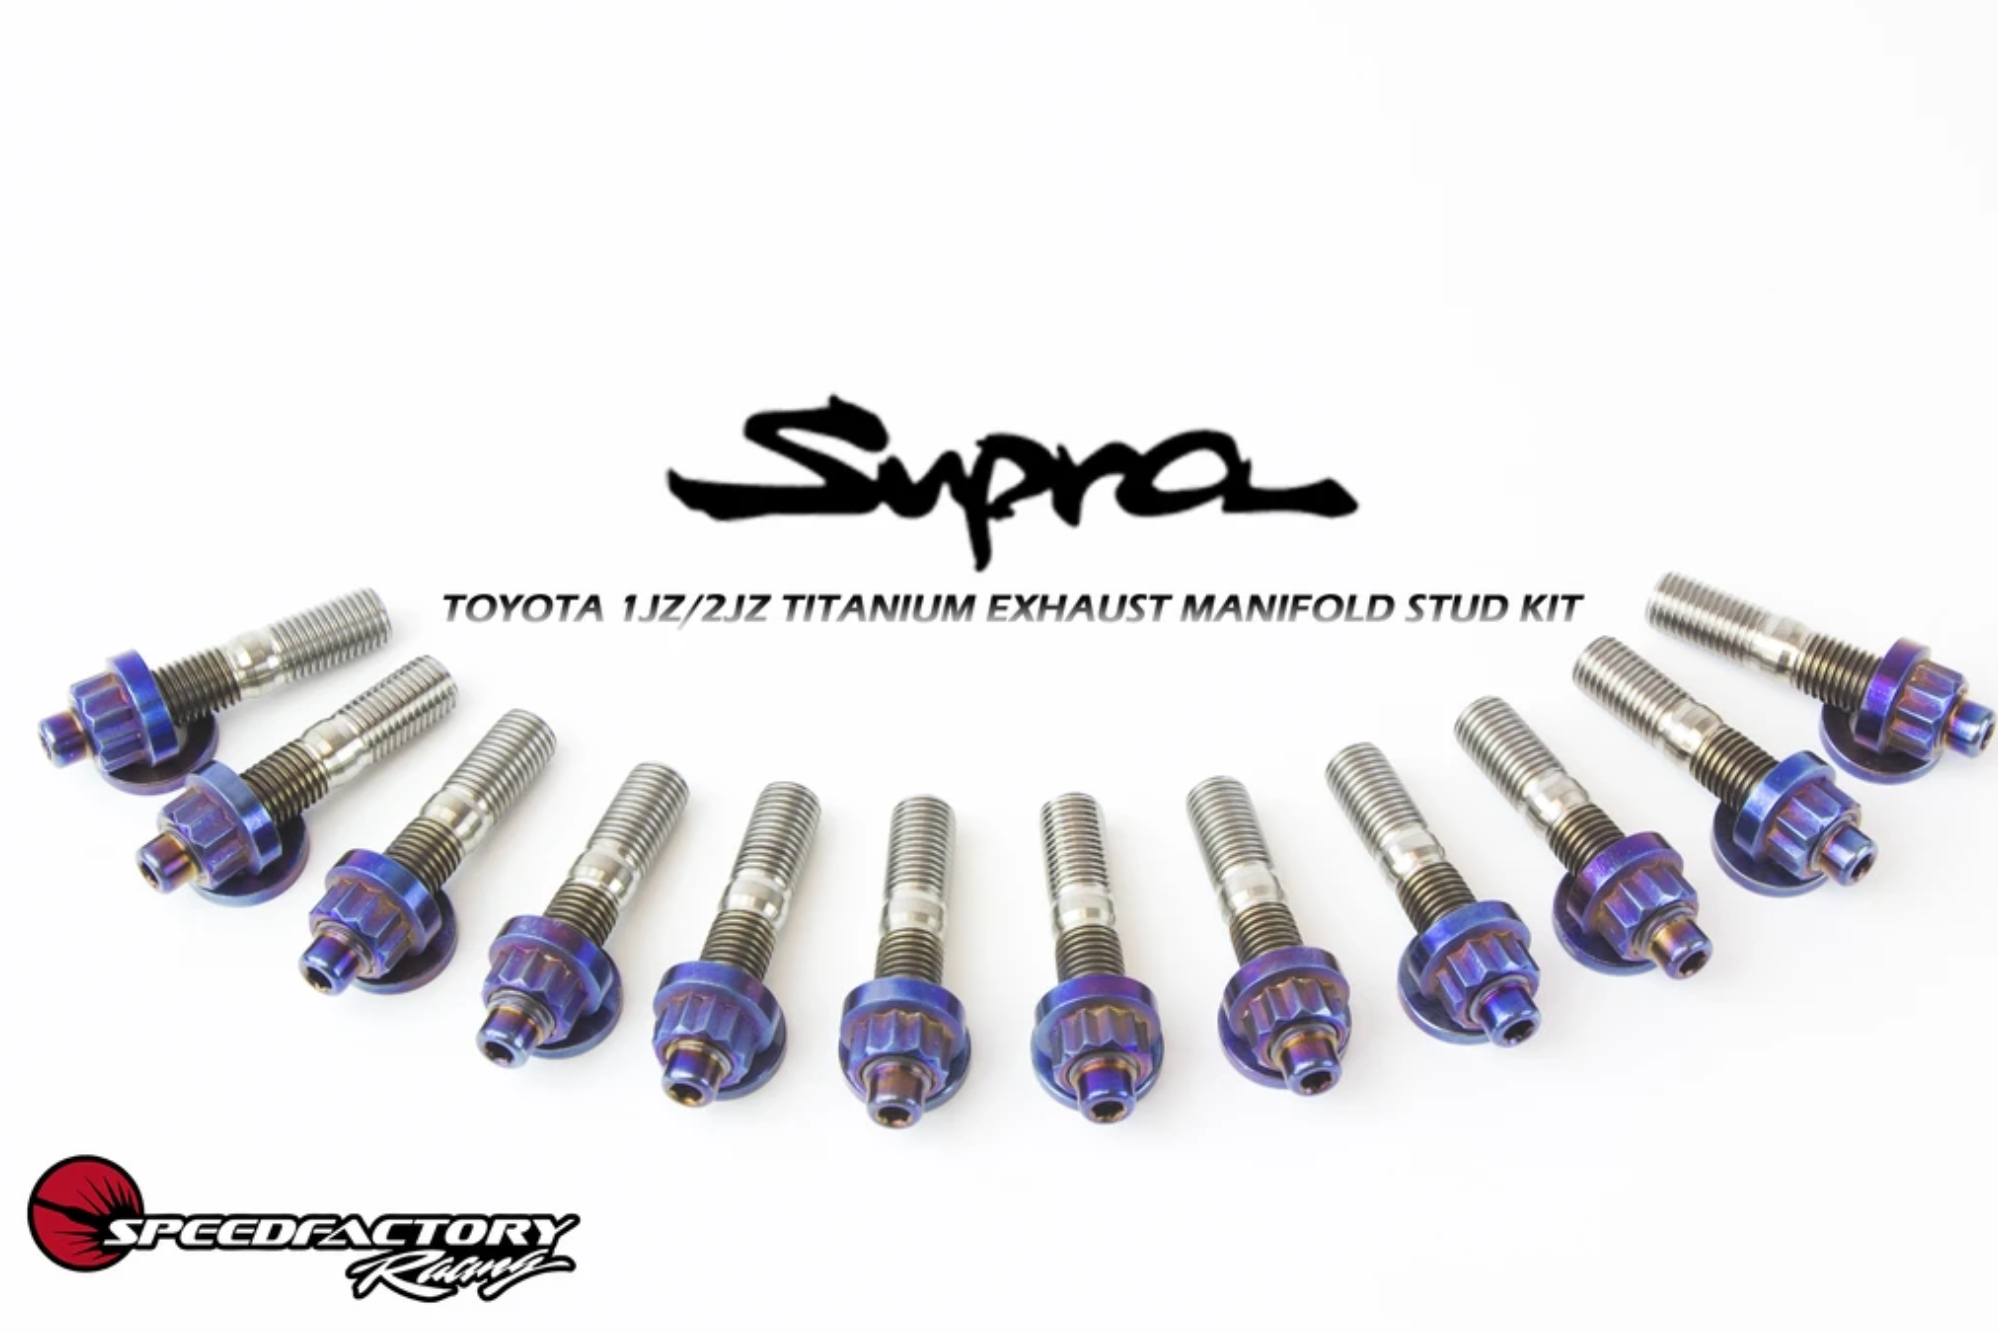 SpeedFactory 1JZ/2JZ Toyota Exhaust Manifold Titanium Stud Kit